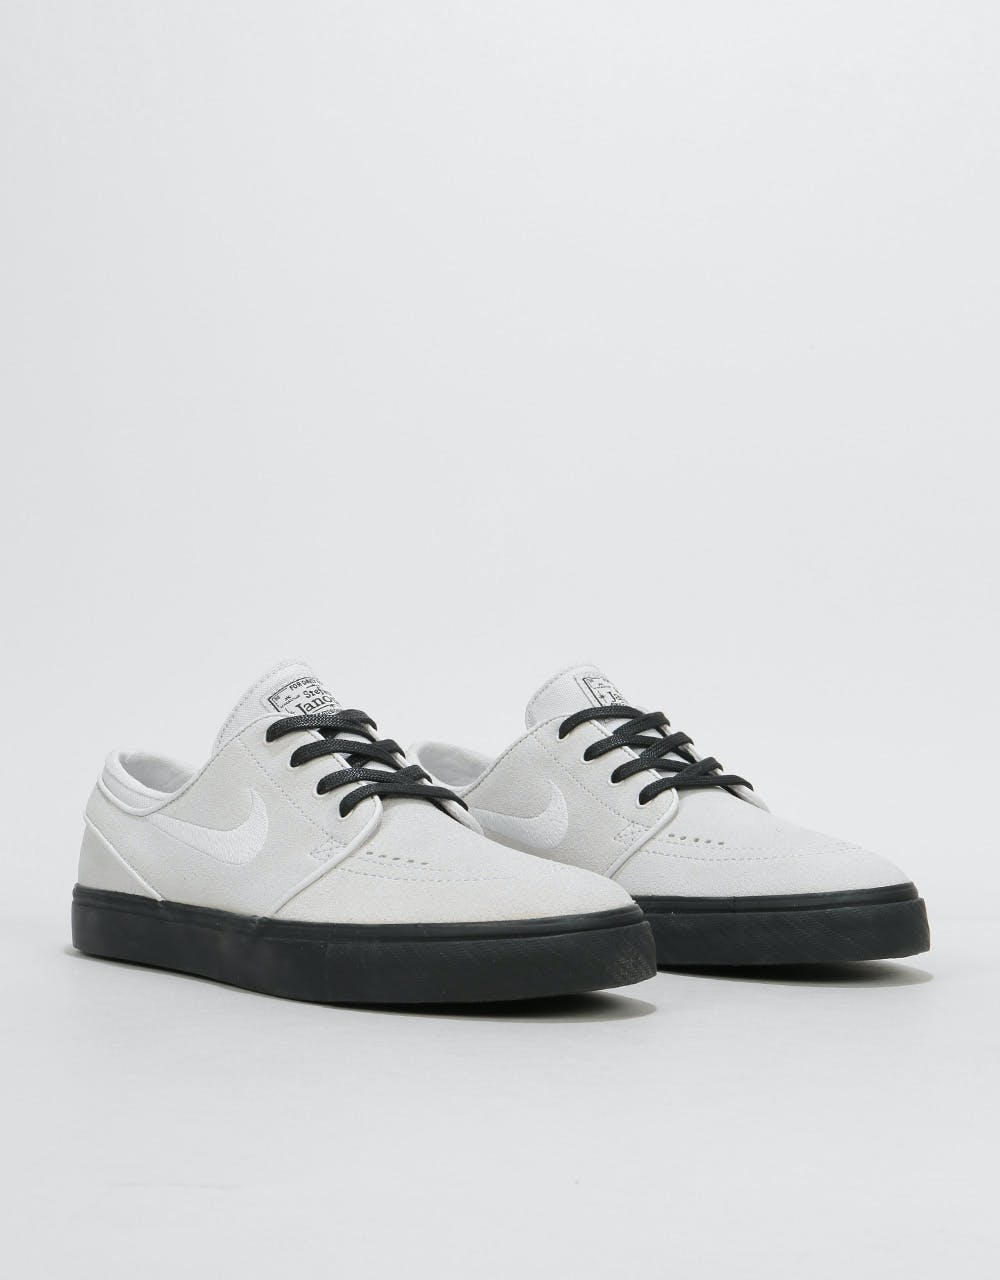 Nike SB Zoom Stefan Janoski Skate Shoes - Vast Grey/Vast Grey-Black